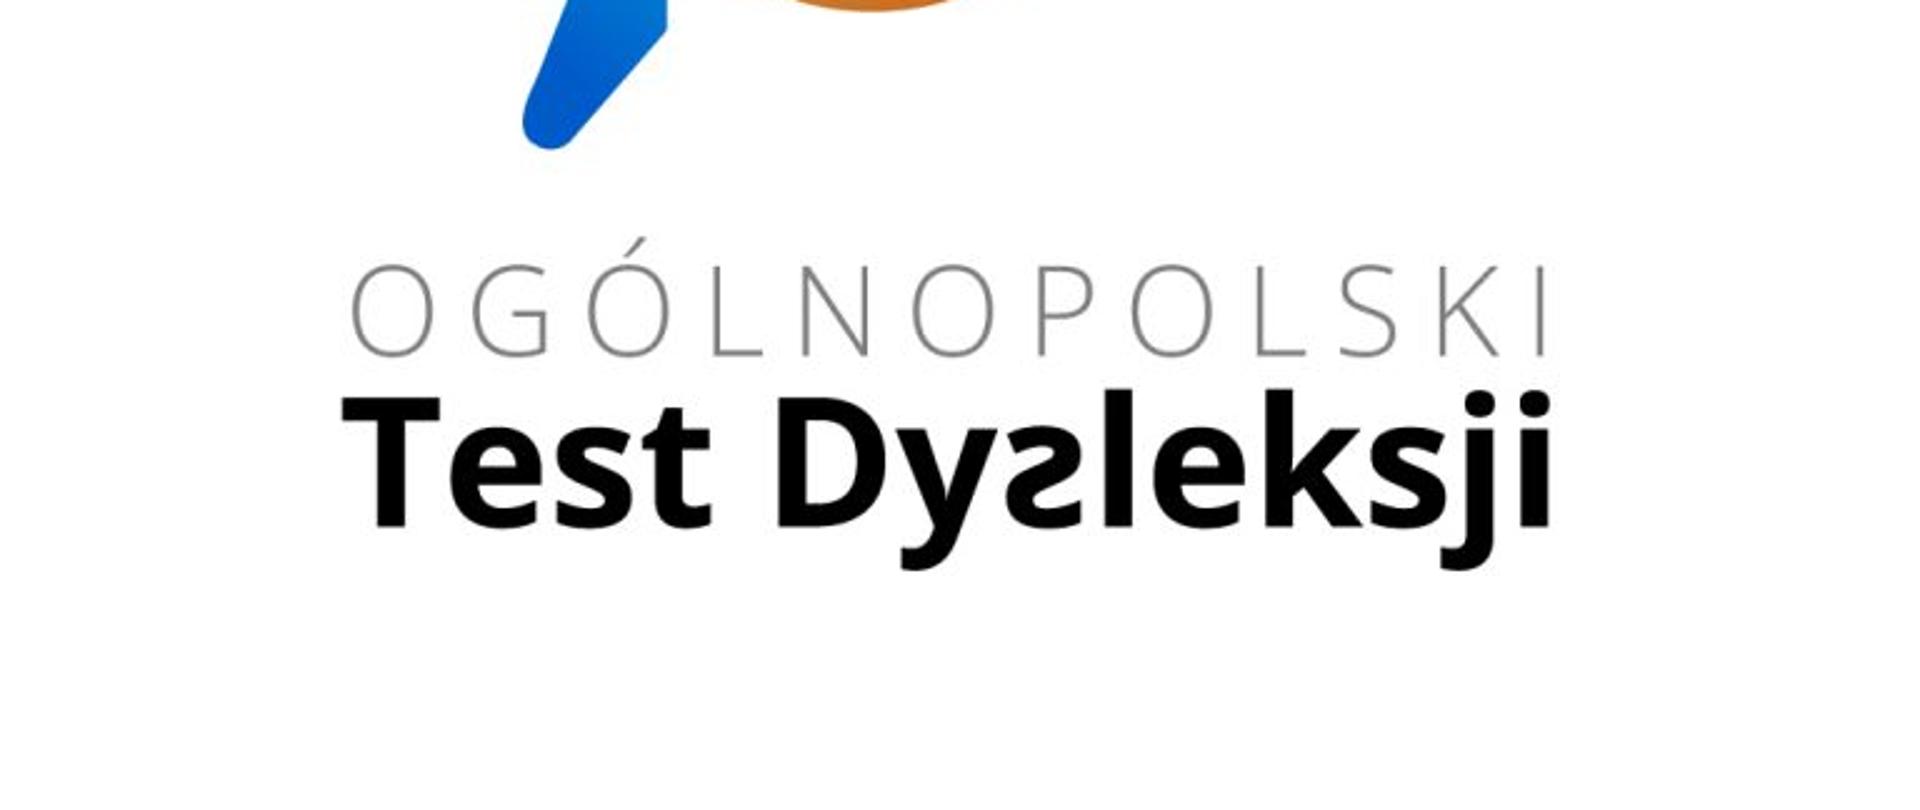 Ogolnopolski-Test-Dysleksji